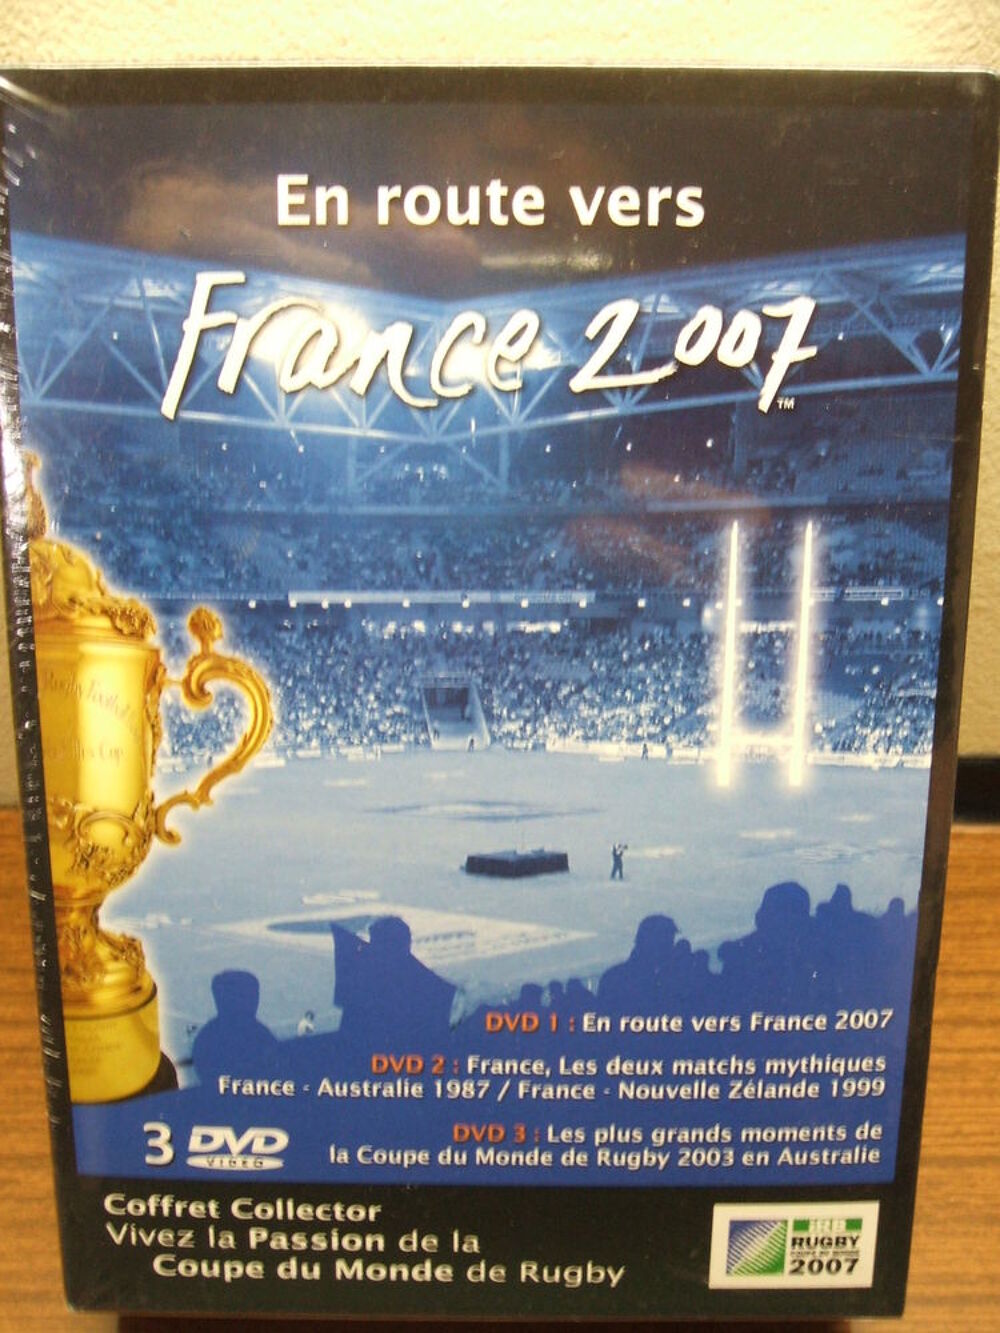 Coffret collector de 3 DVD coupes du monde de rugby
DVD et blu-ray